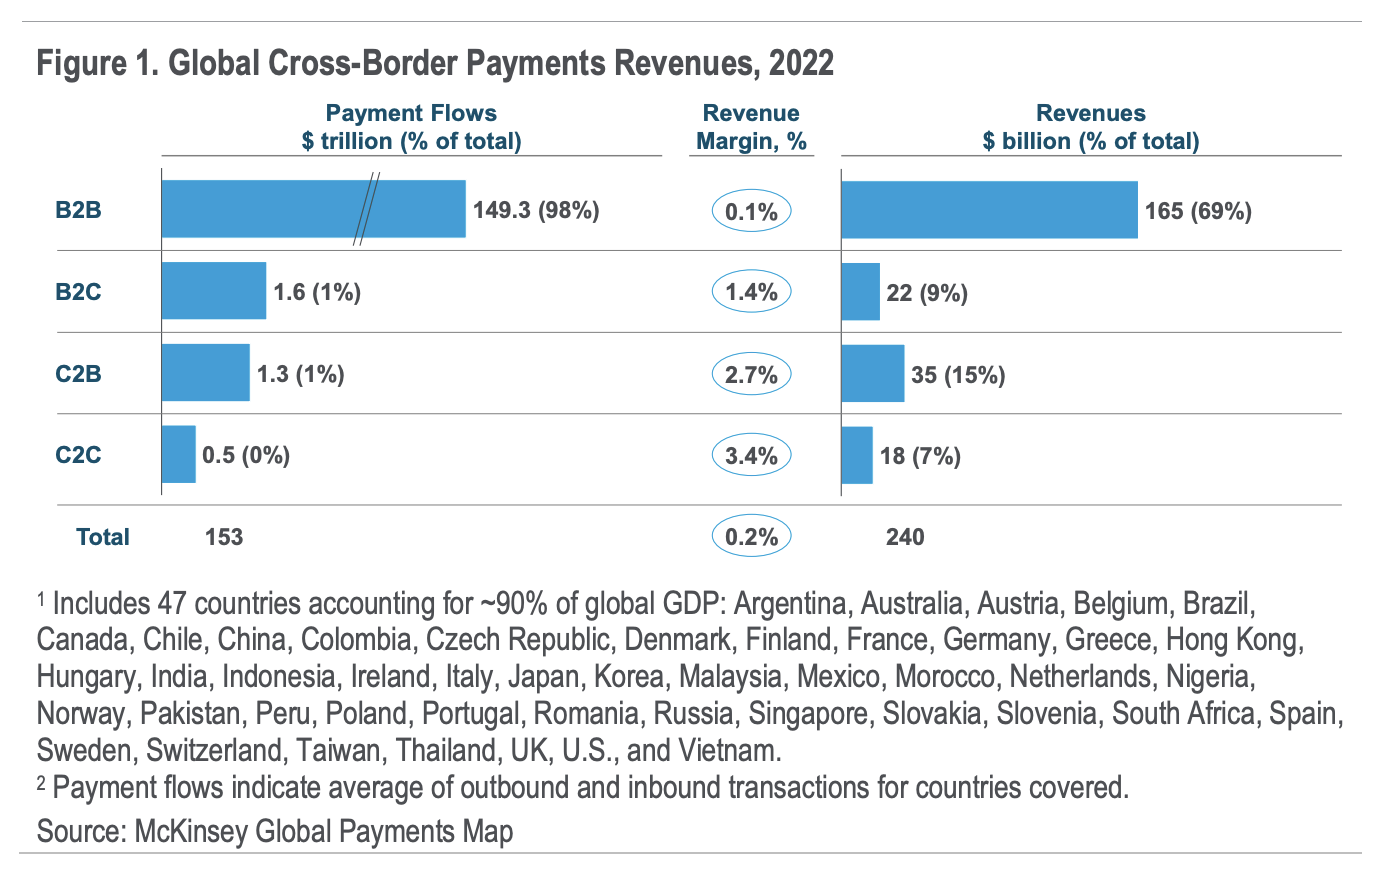 世界の国境を越えた決済収益、2022 年、出典: 国境を越えた決済の将来: 今後 250 年間で 2023 兆ドルを移動するのは誰ですか?、Citi GPS、XNUMX 年 XNUMX 月